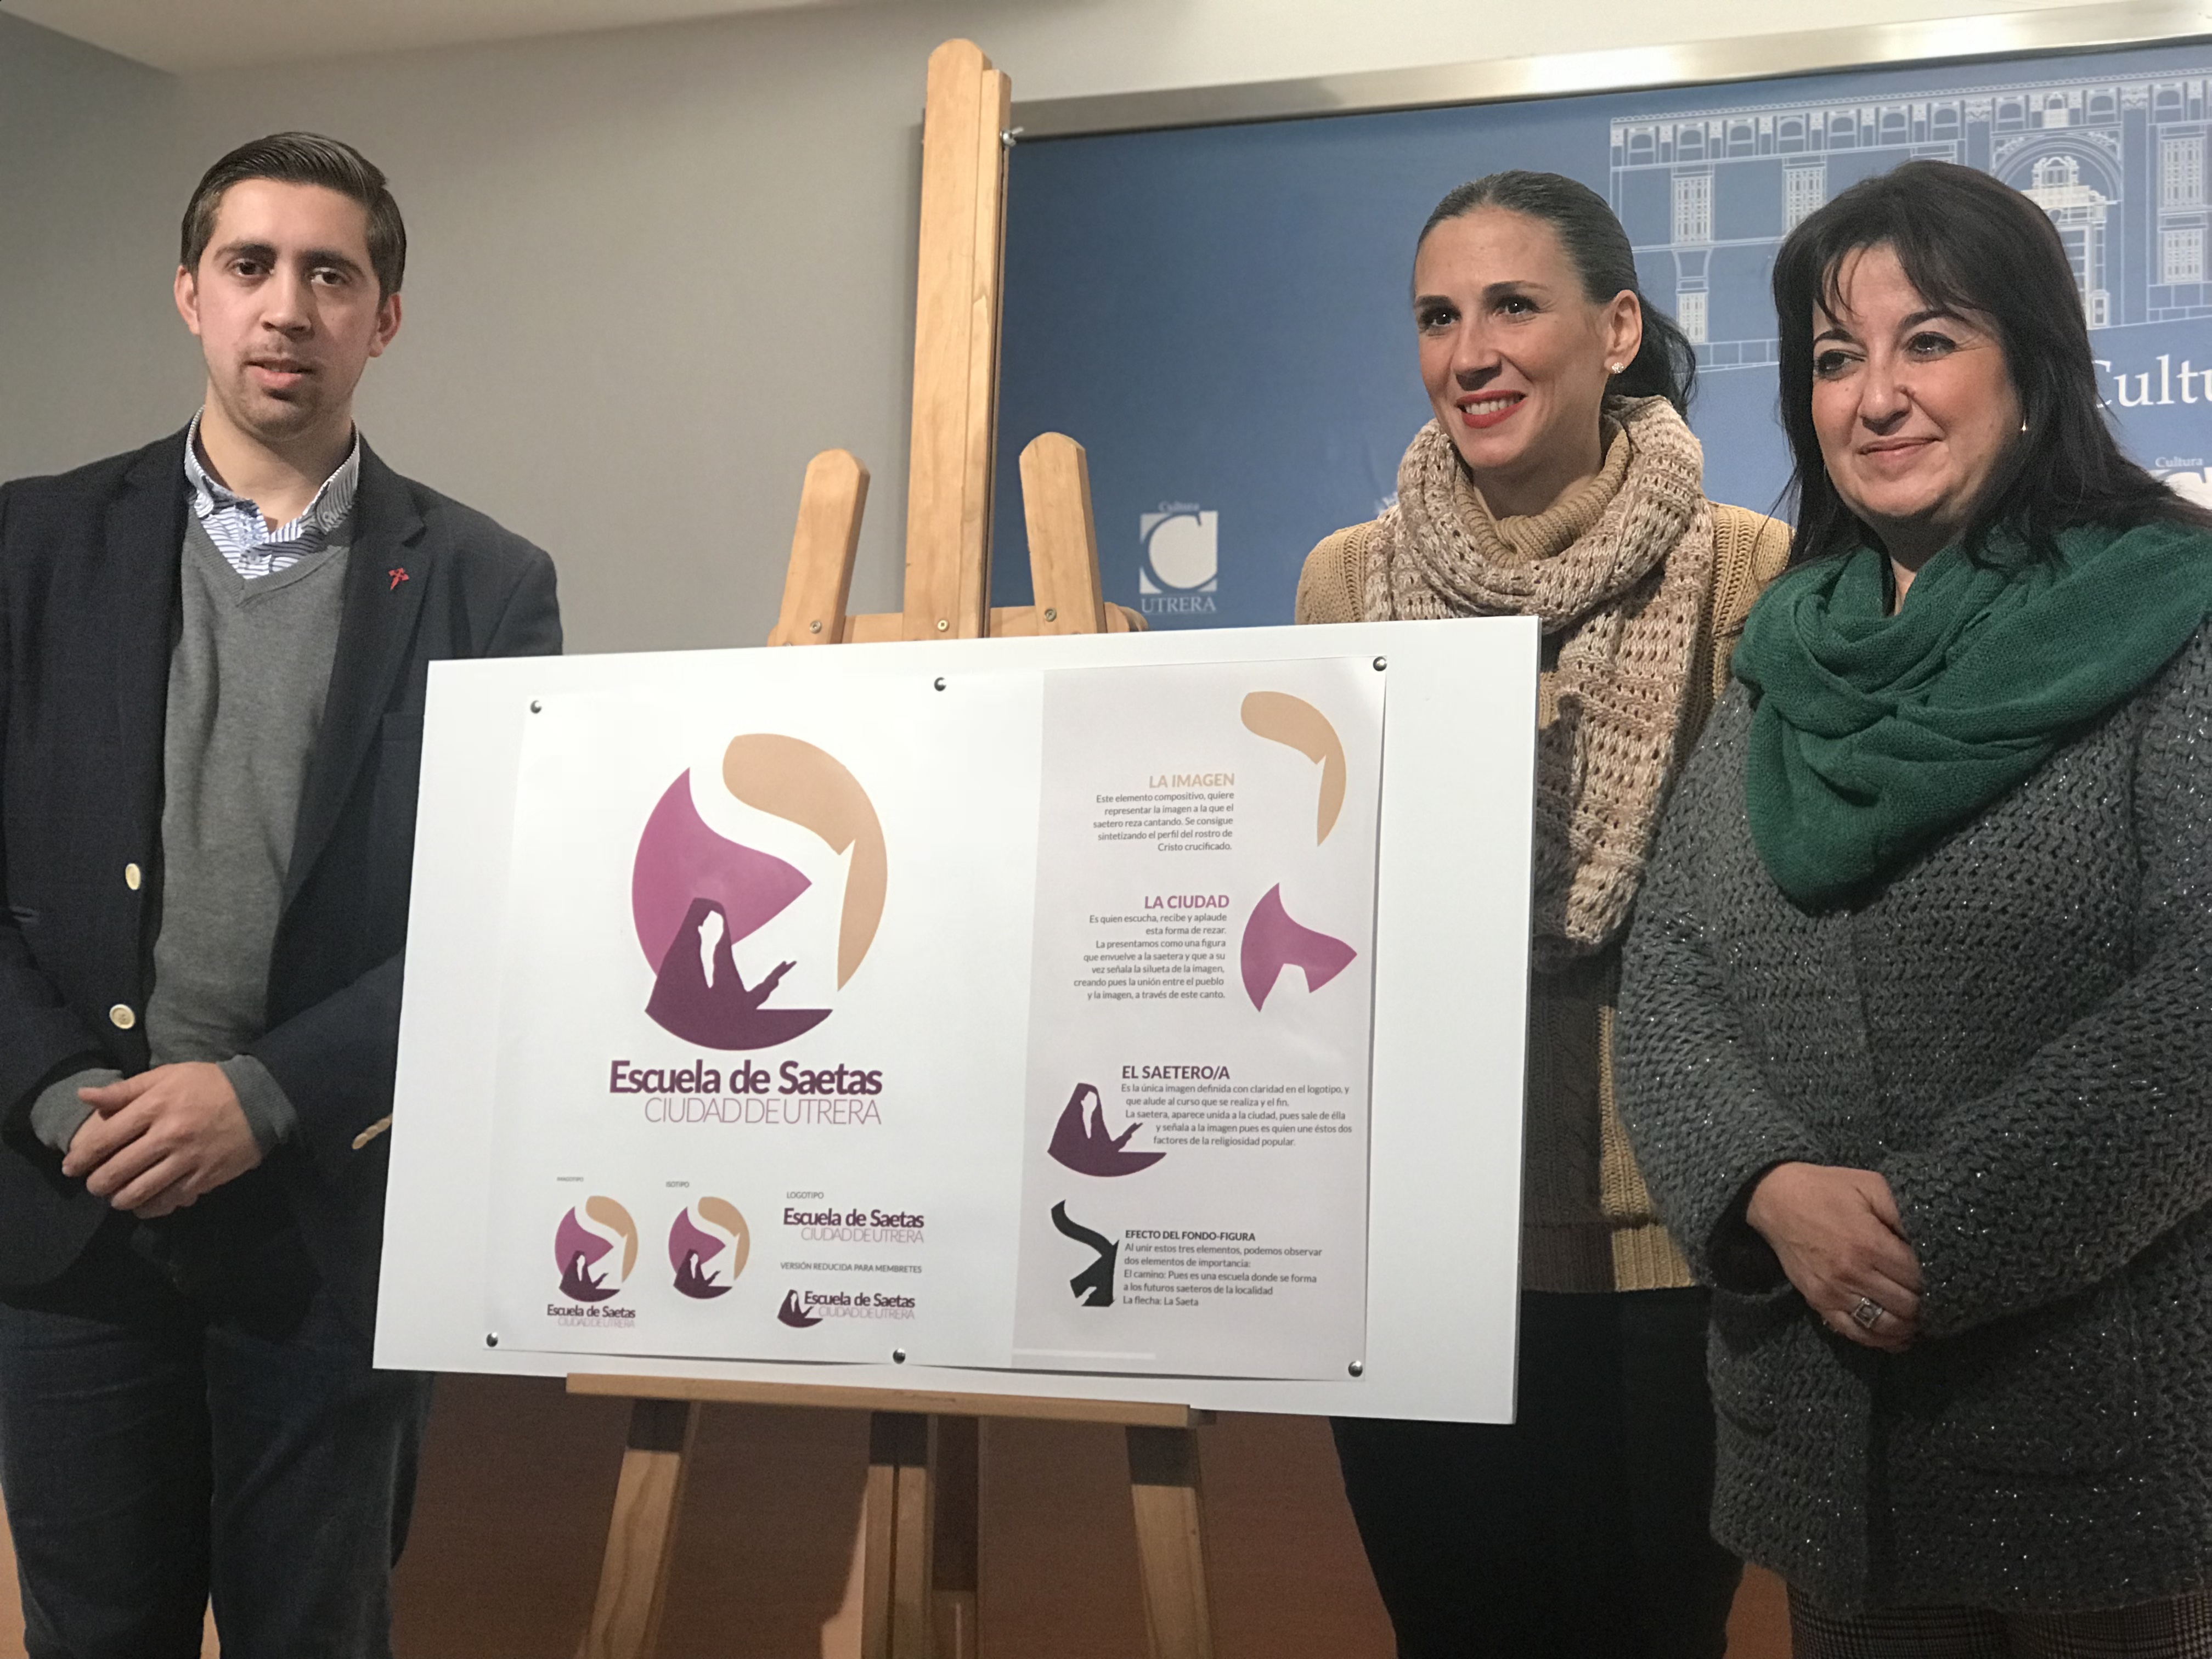 Presentado el I Concurso de Saetas «Ciudad de Utrera» y el logo de la Escuela, obra de Paco Caro